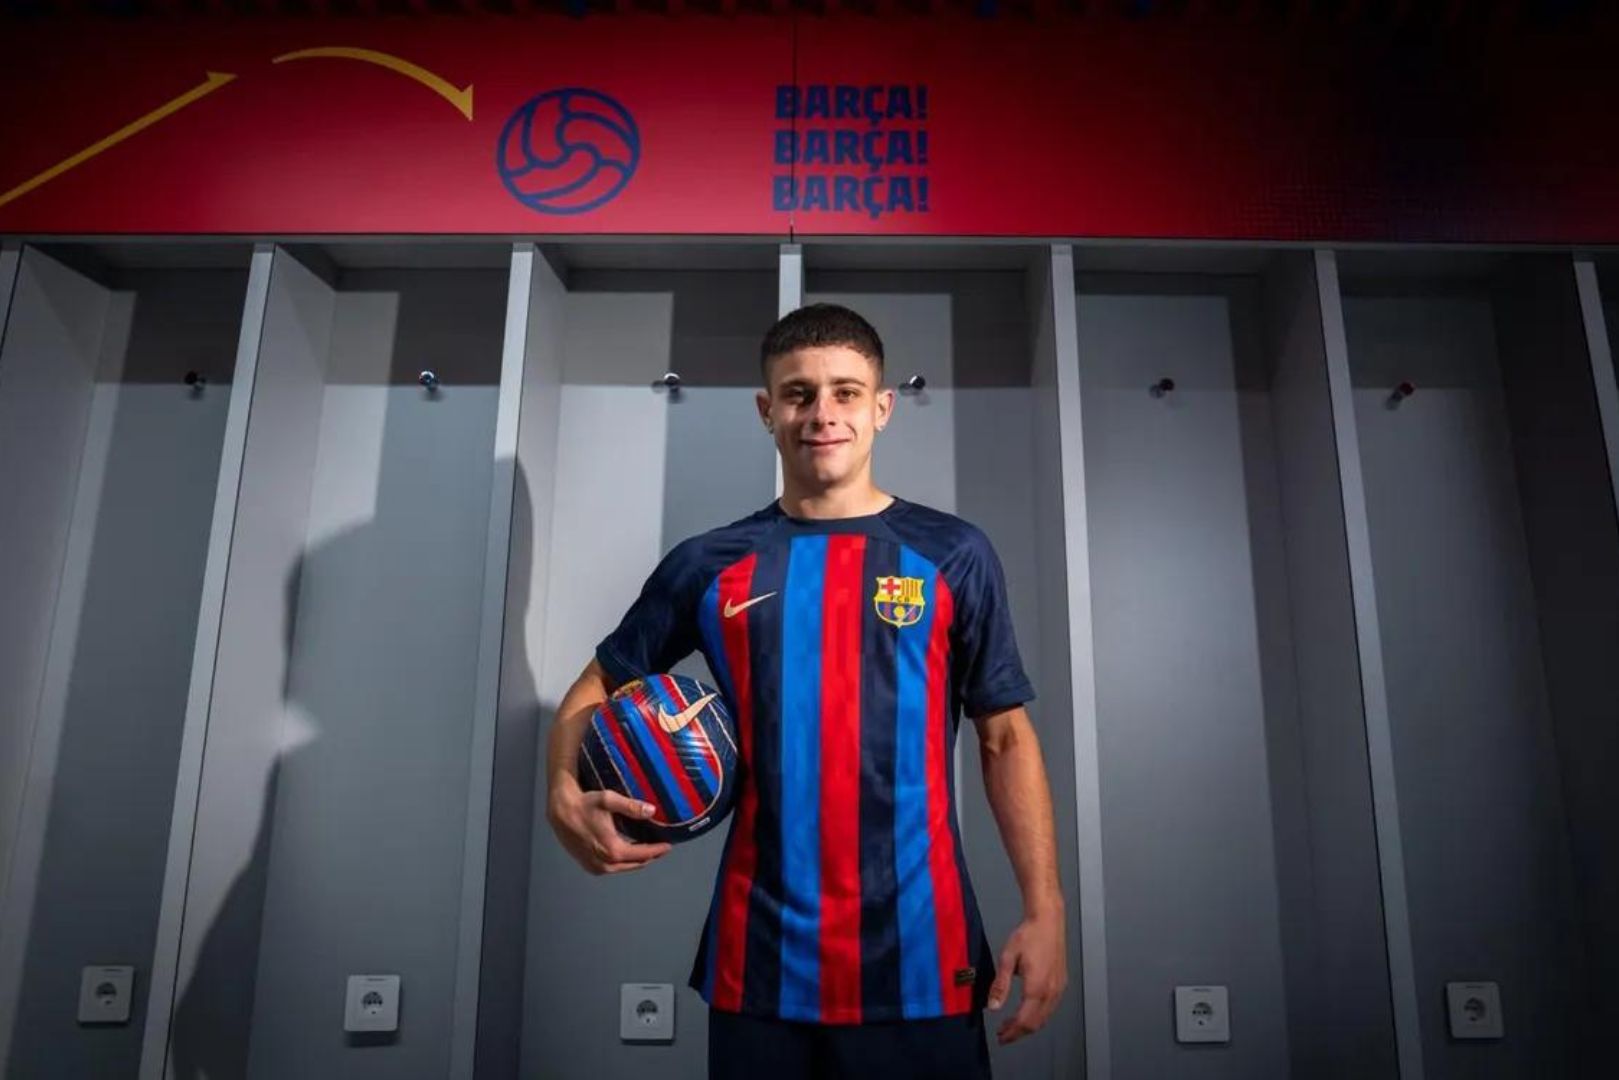 Lucas Román joins Barça Atlètic